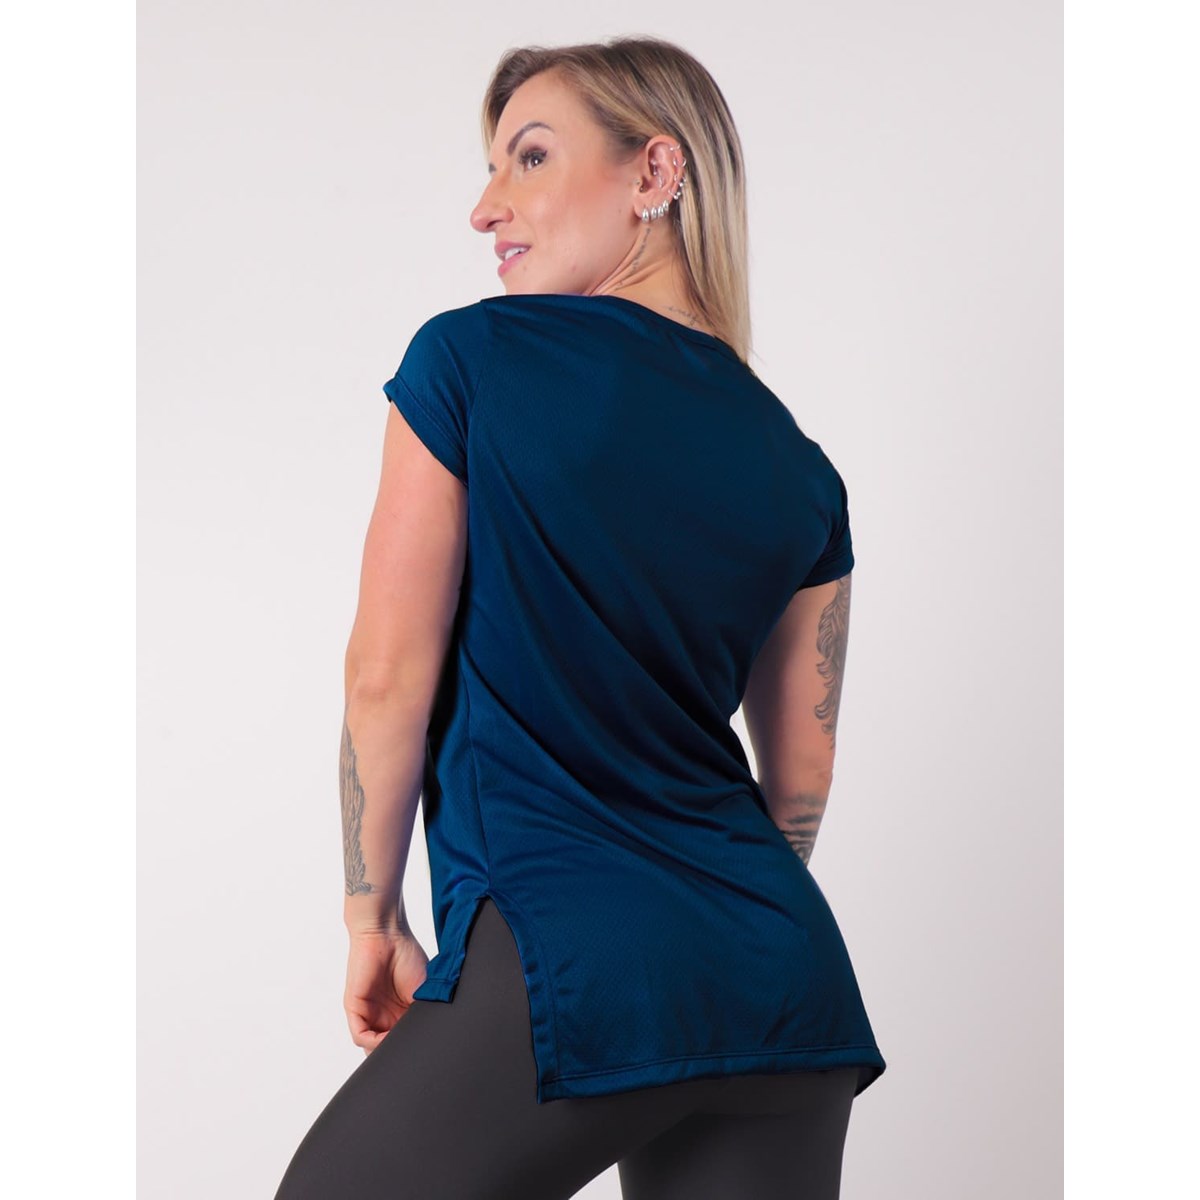 Blusa Feminina em Dry Fit Alongada com Manguinhas Azul Marinho | Ref: 4.4.4461-18